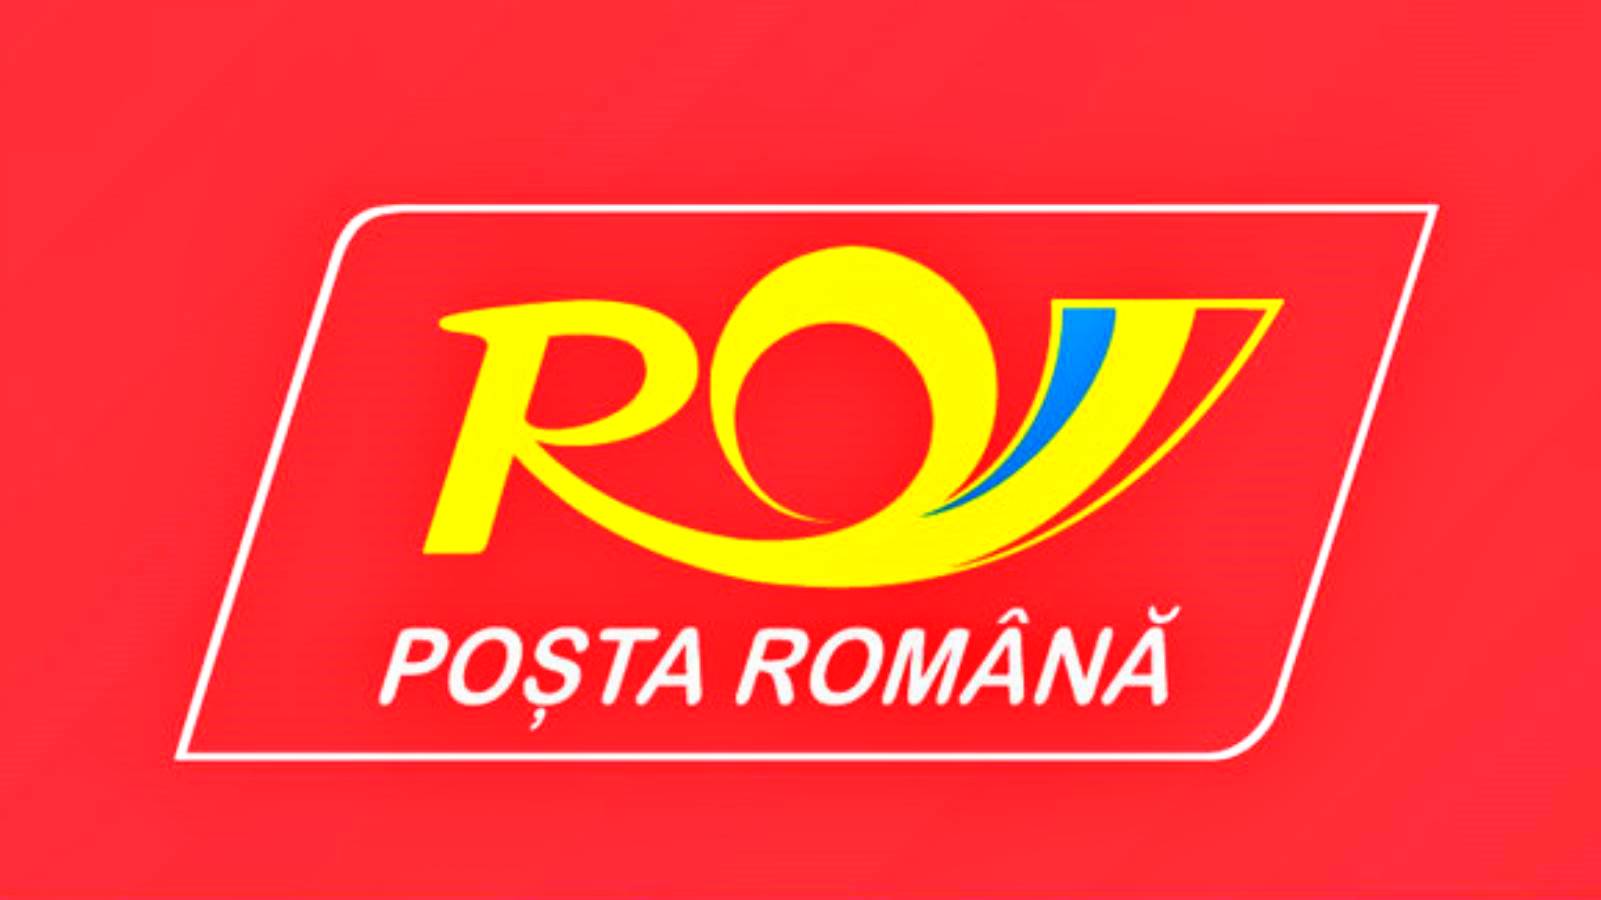 Le poste rumene consegnano il denaro inviato online Mandato postale